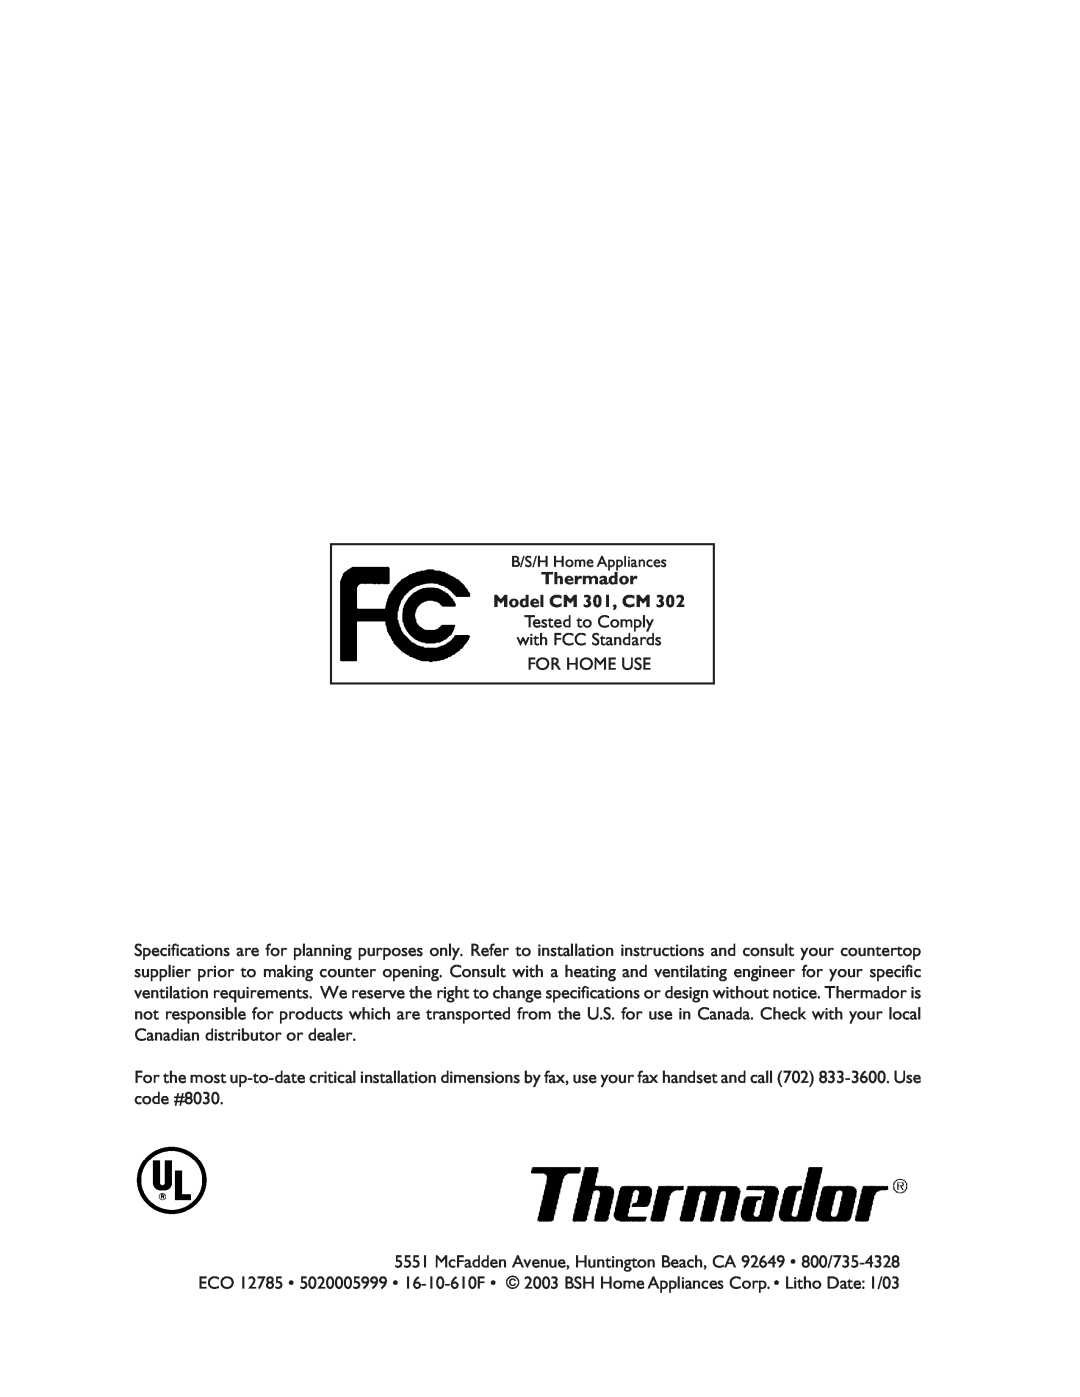 Thermador CM302 manual Thermador Model CM 301, CM 